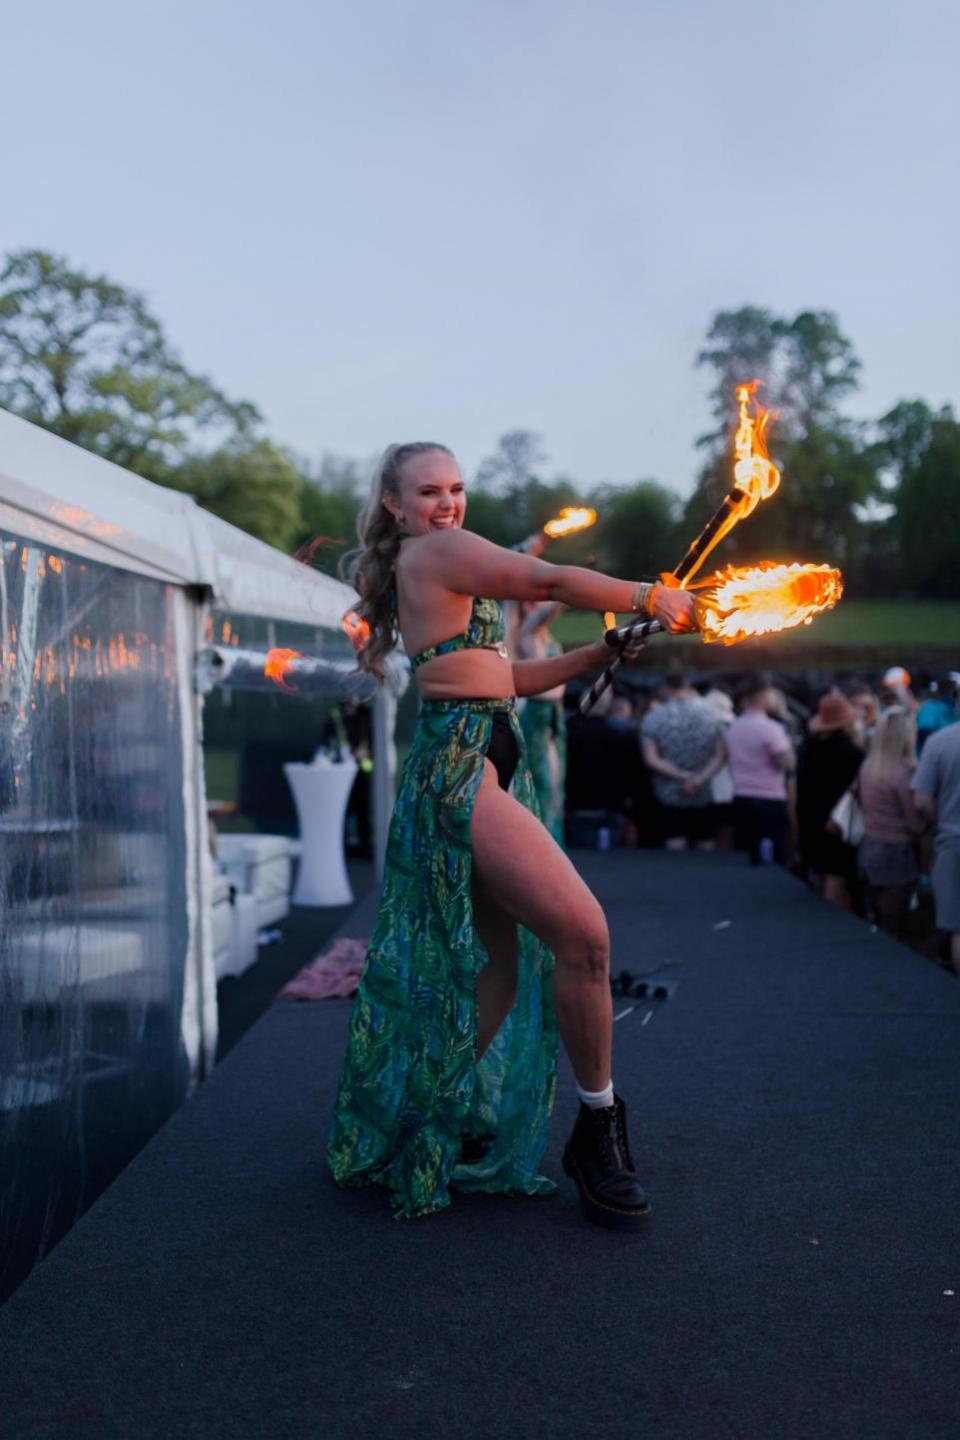 Gazette: Fire - A fire dancer at the event